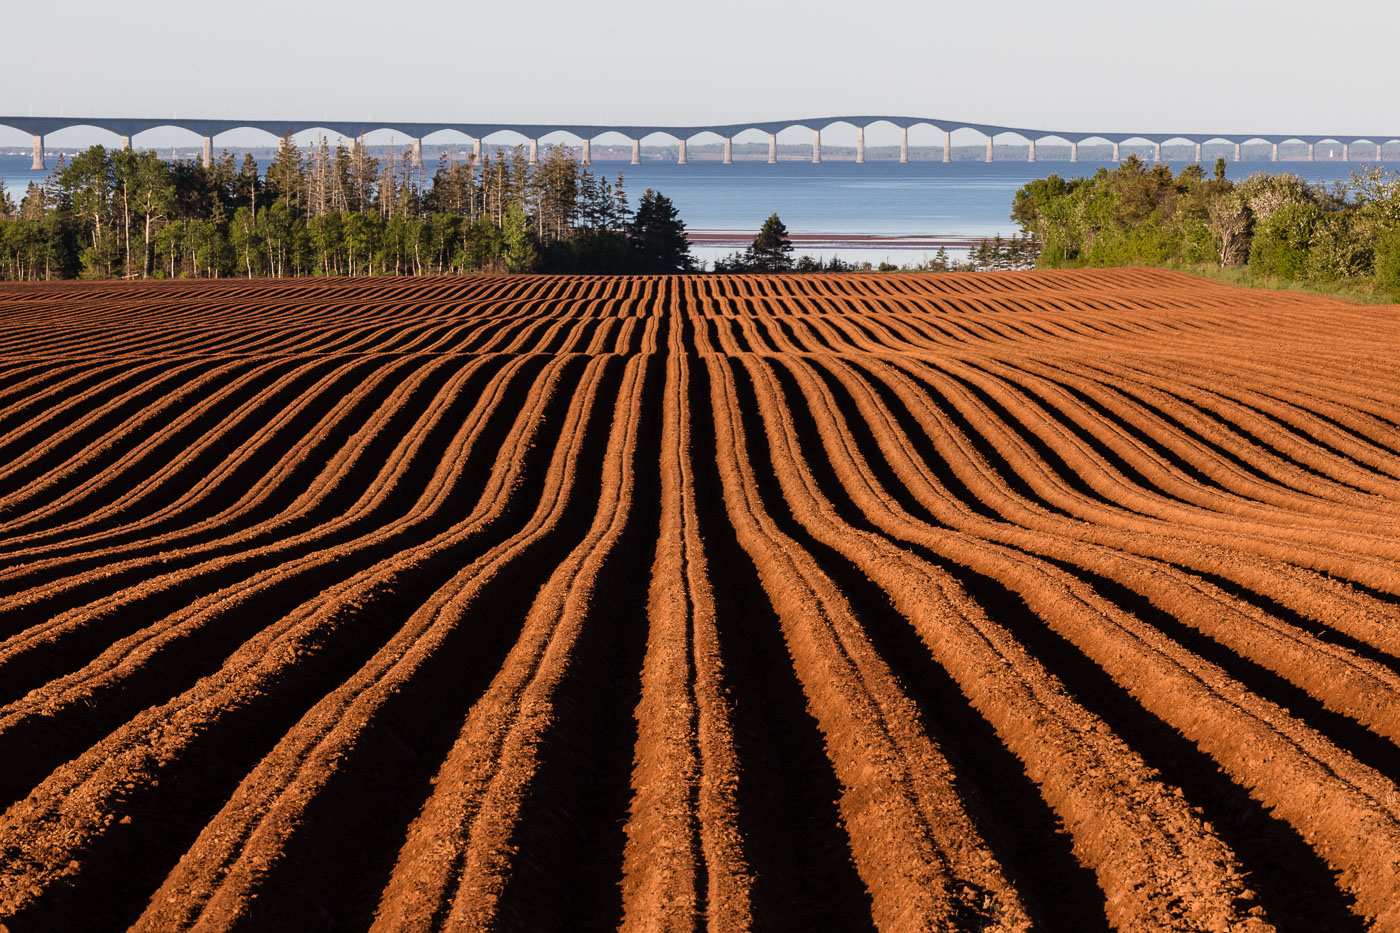 Potato Field and Confederation Bridge in PEI